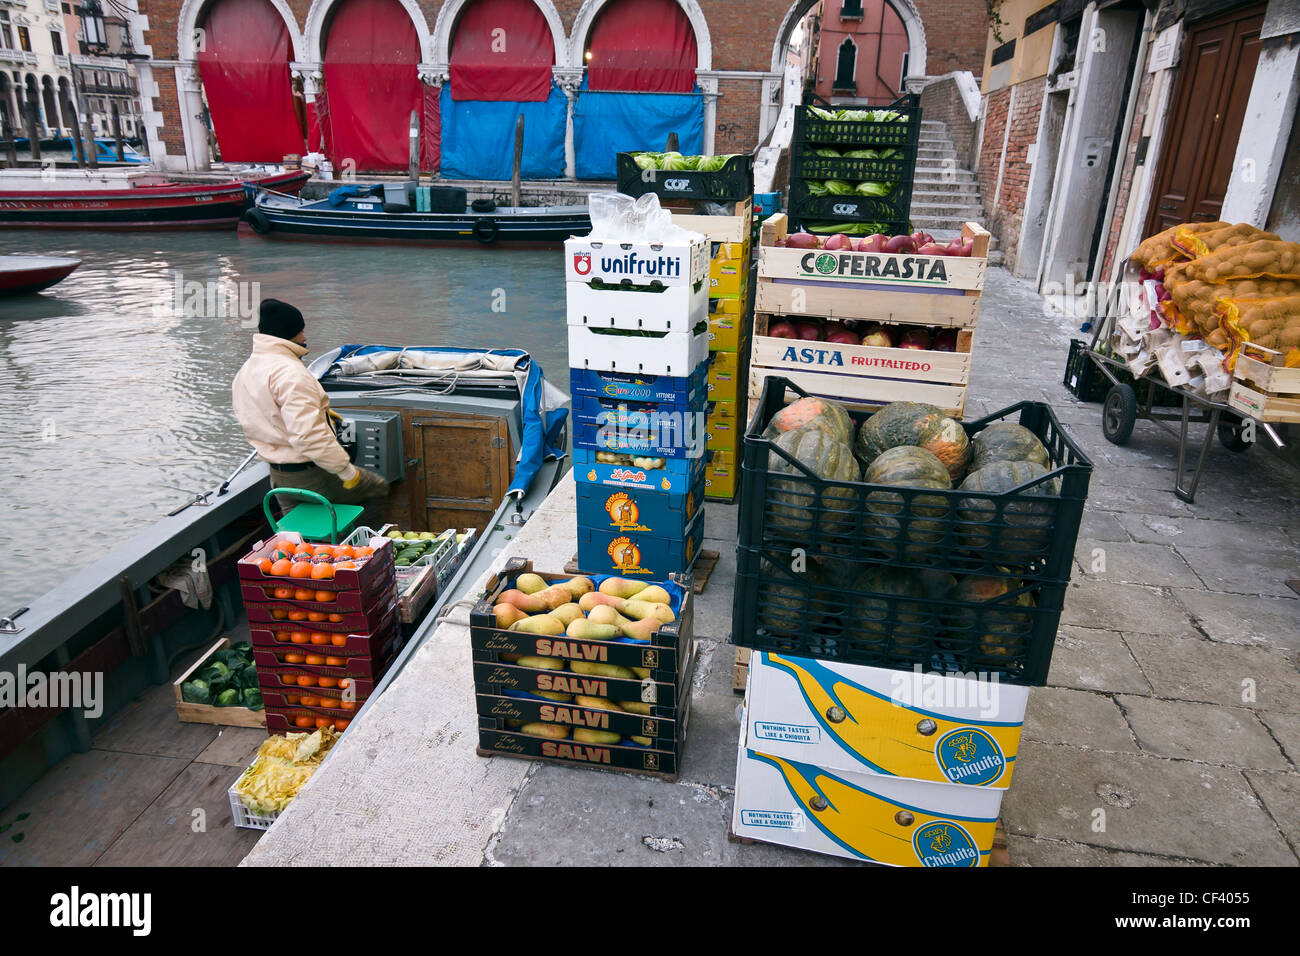 Ein Mann entlädt Obst und Gemüse aus seinem Boot am Markt von Rialto - Venedig, Venezia, Italien, Europa Stockfoto